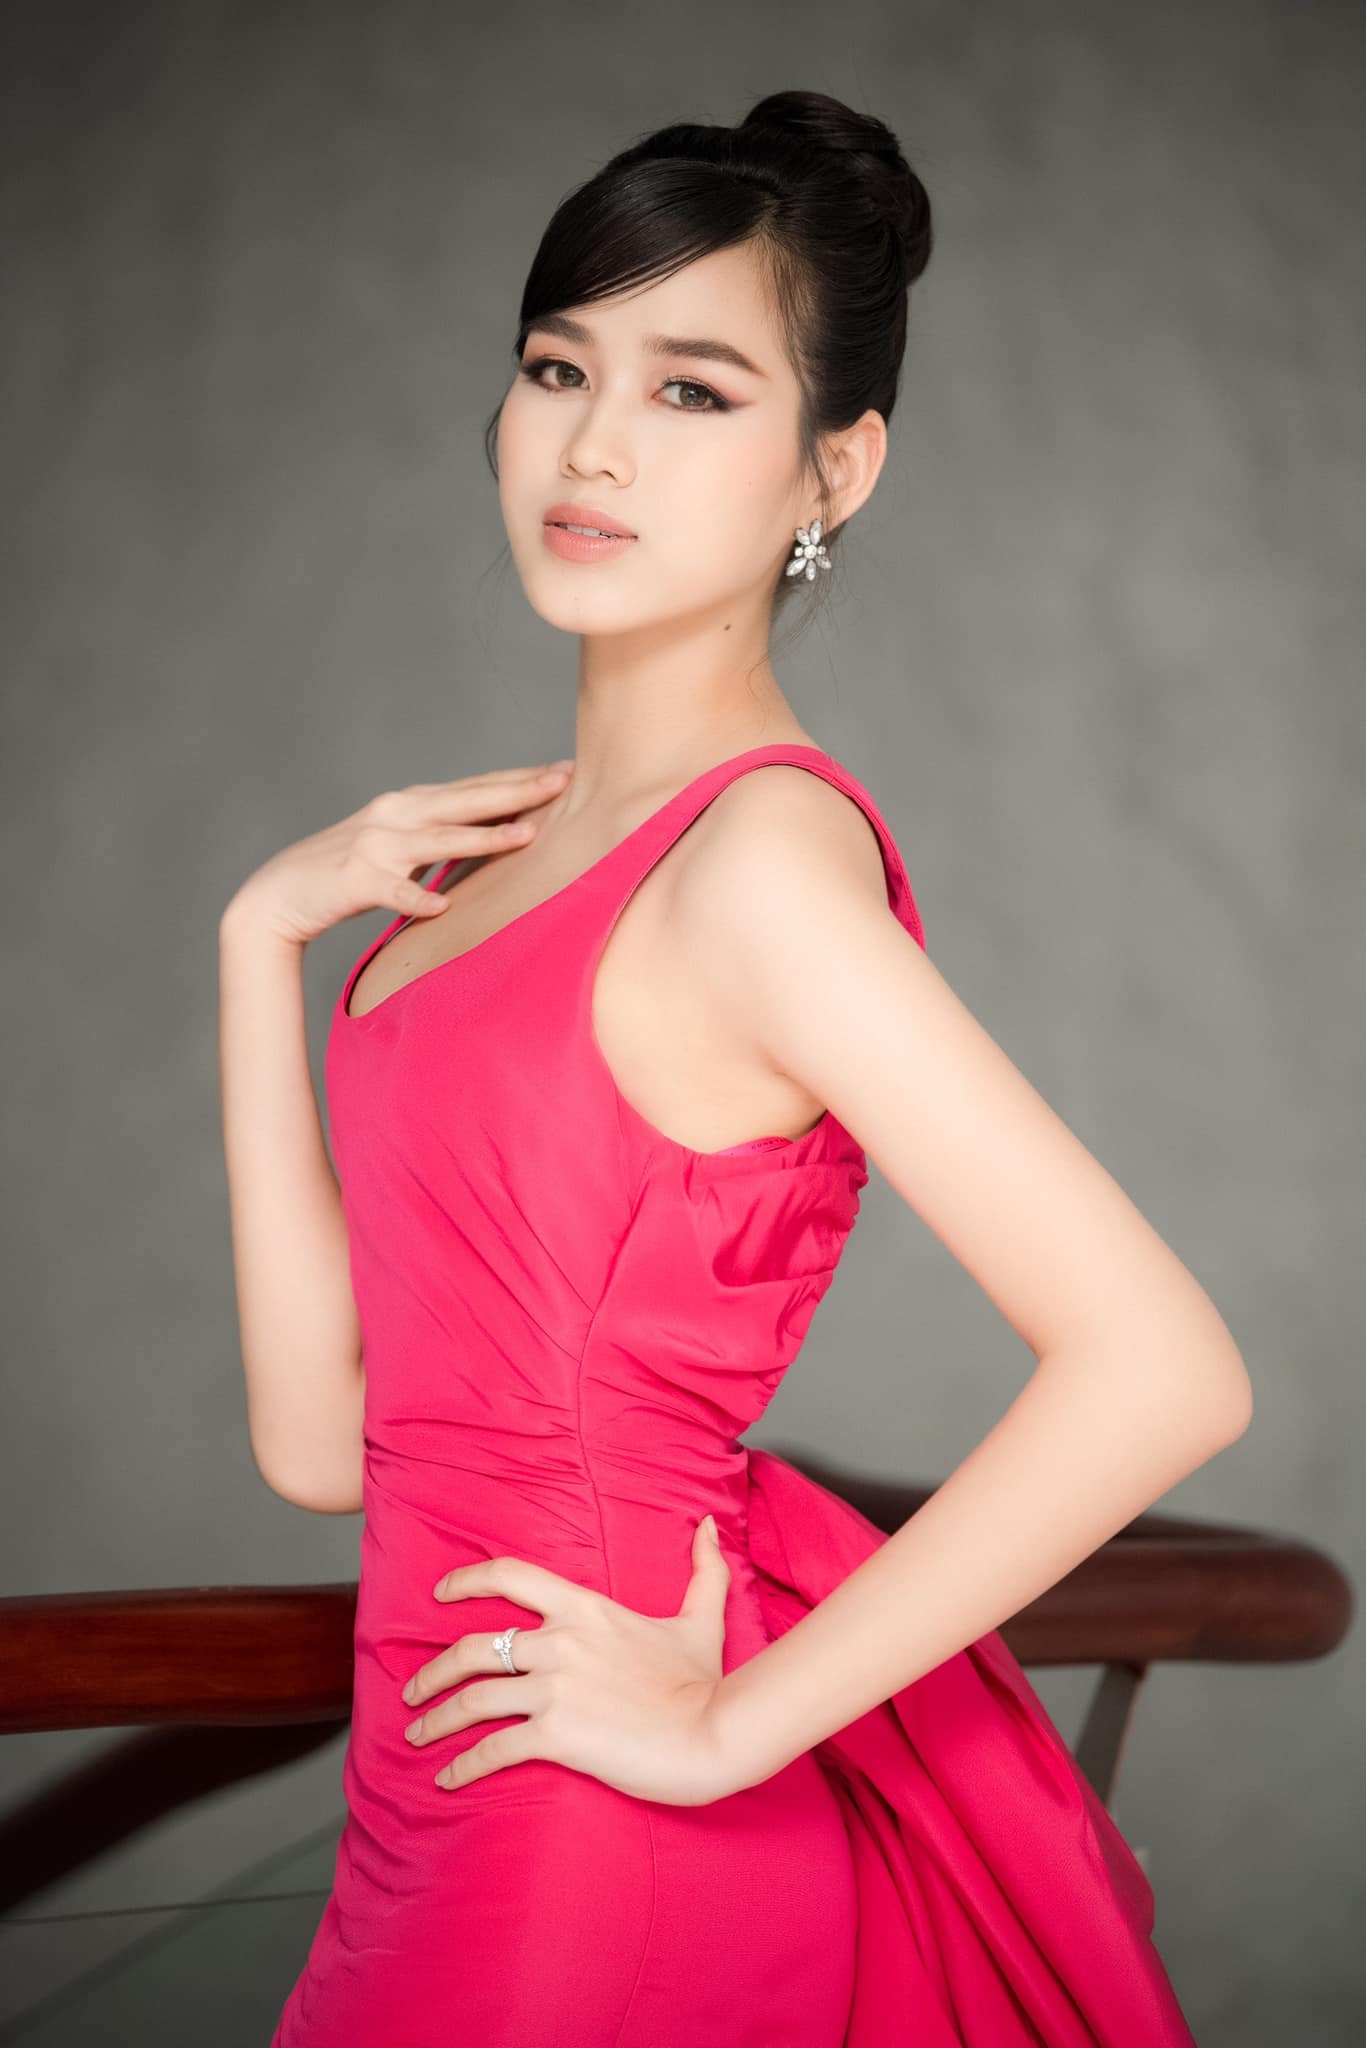 Đỗ Thị Hà sẽ là đại diện Việt Nam tham gia Hoa hậu Thế giới - Miss World 2021 tại Puerto Rico vào khoảng tháng 12/2021 sắp tới. 